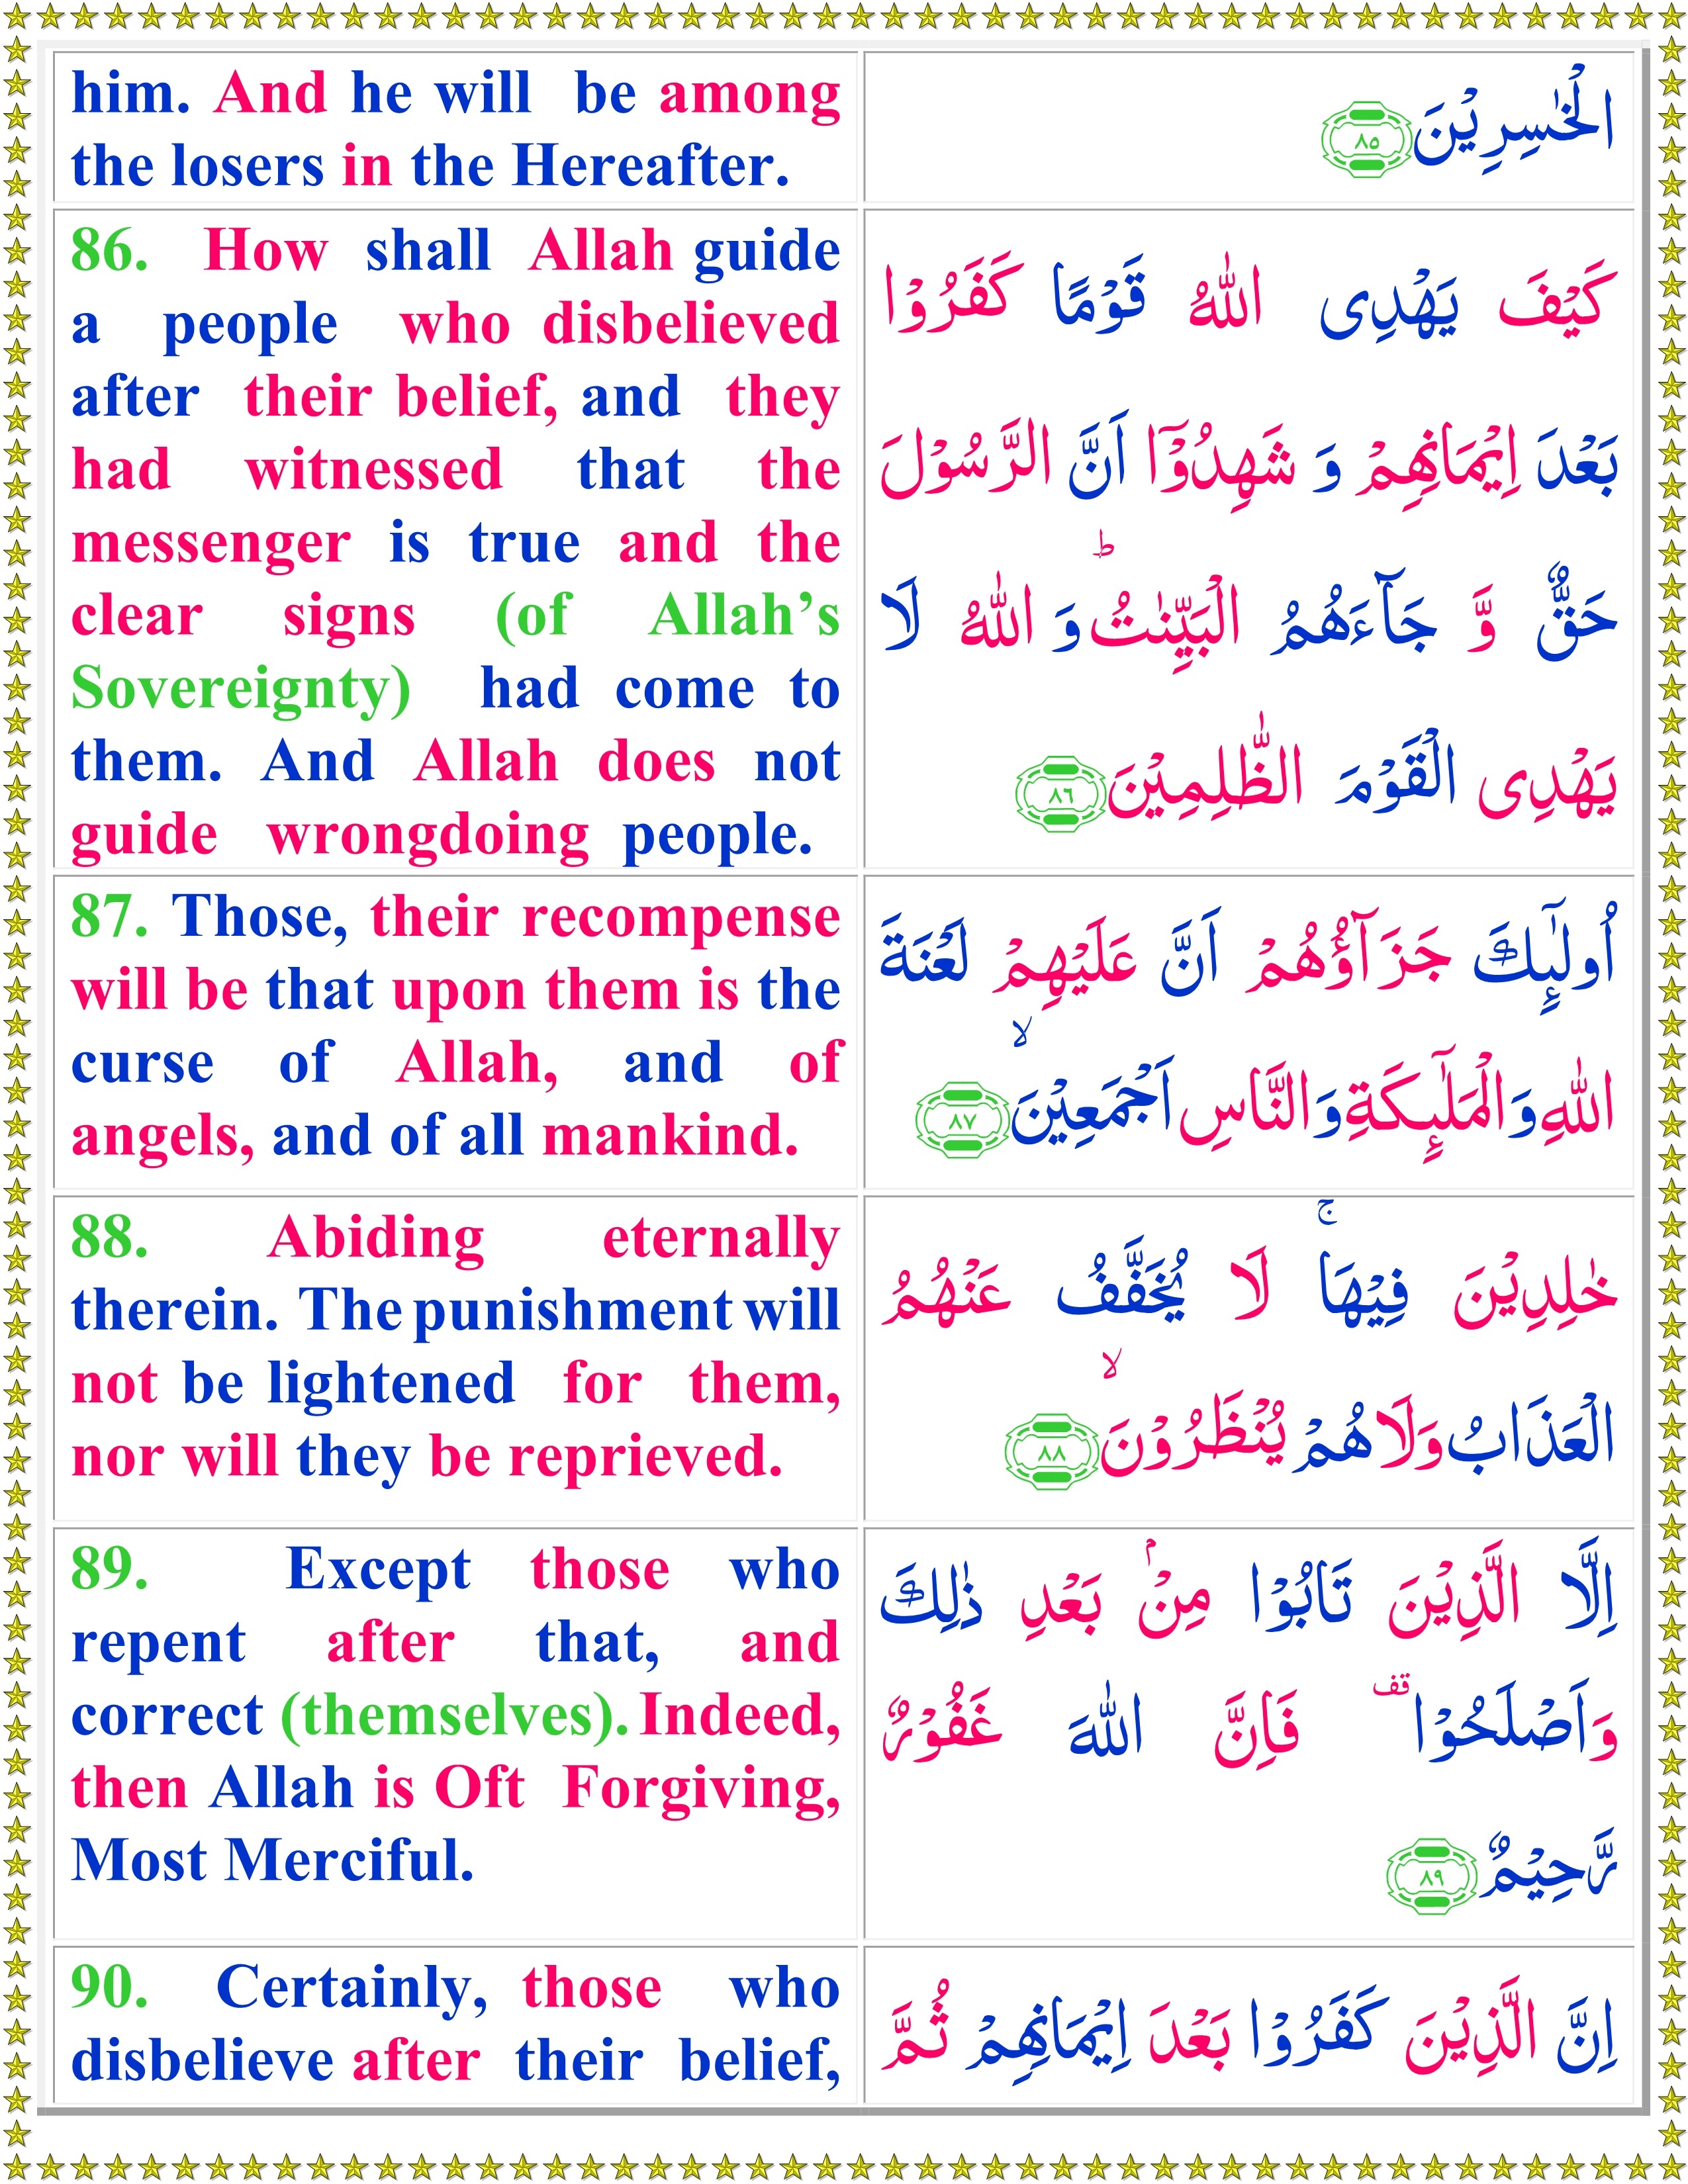 Surah Al-Imran (English) - Page 3 of 7 - Quran o Sunnat